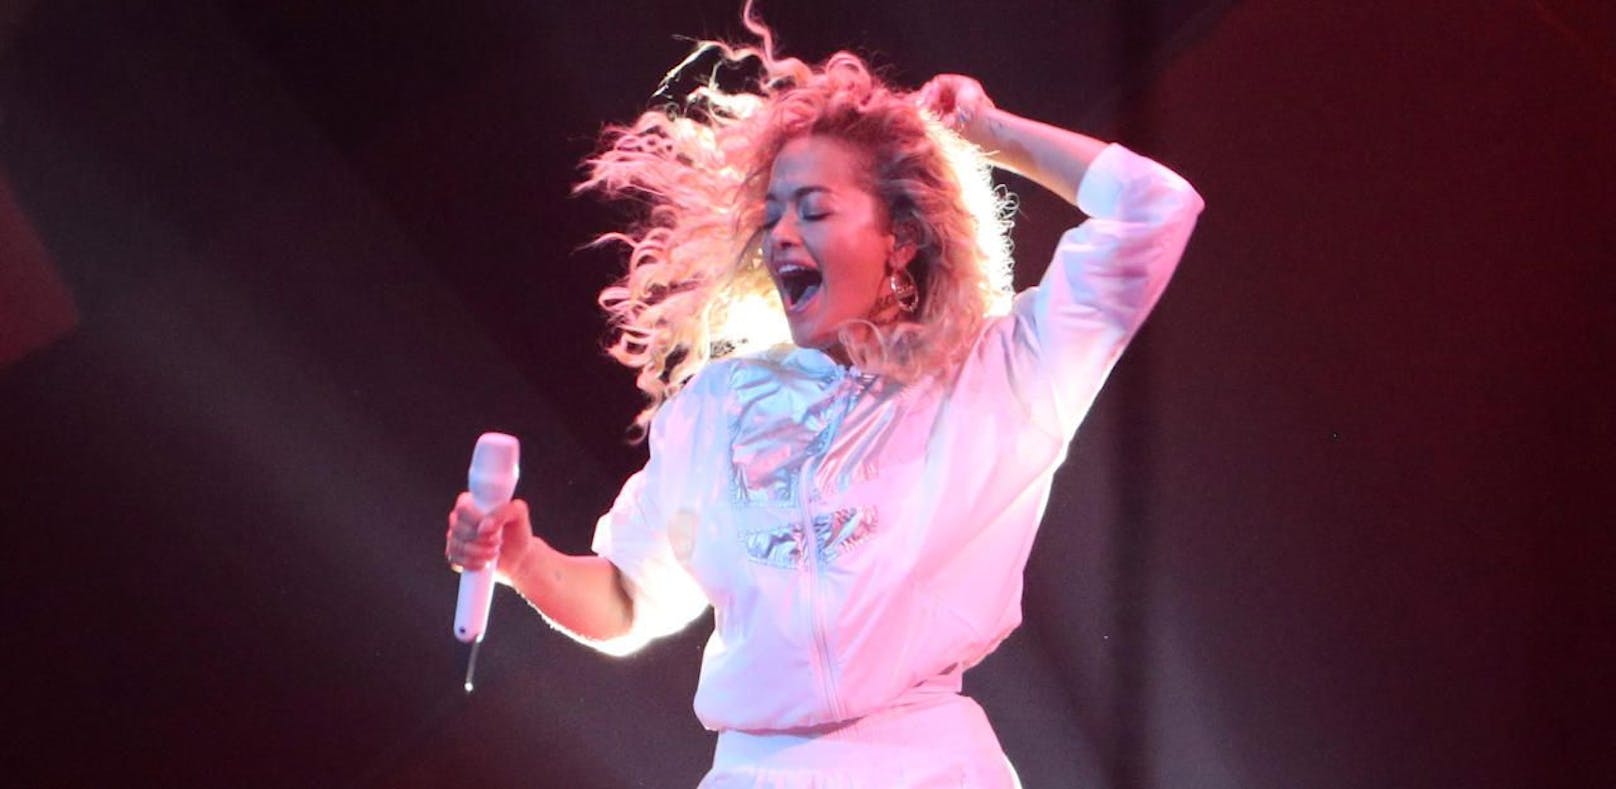 Outet sich Rita Ora auf Instagram als bisexuell